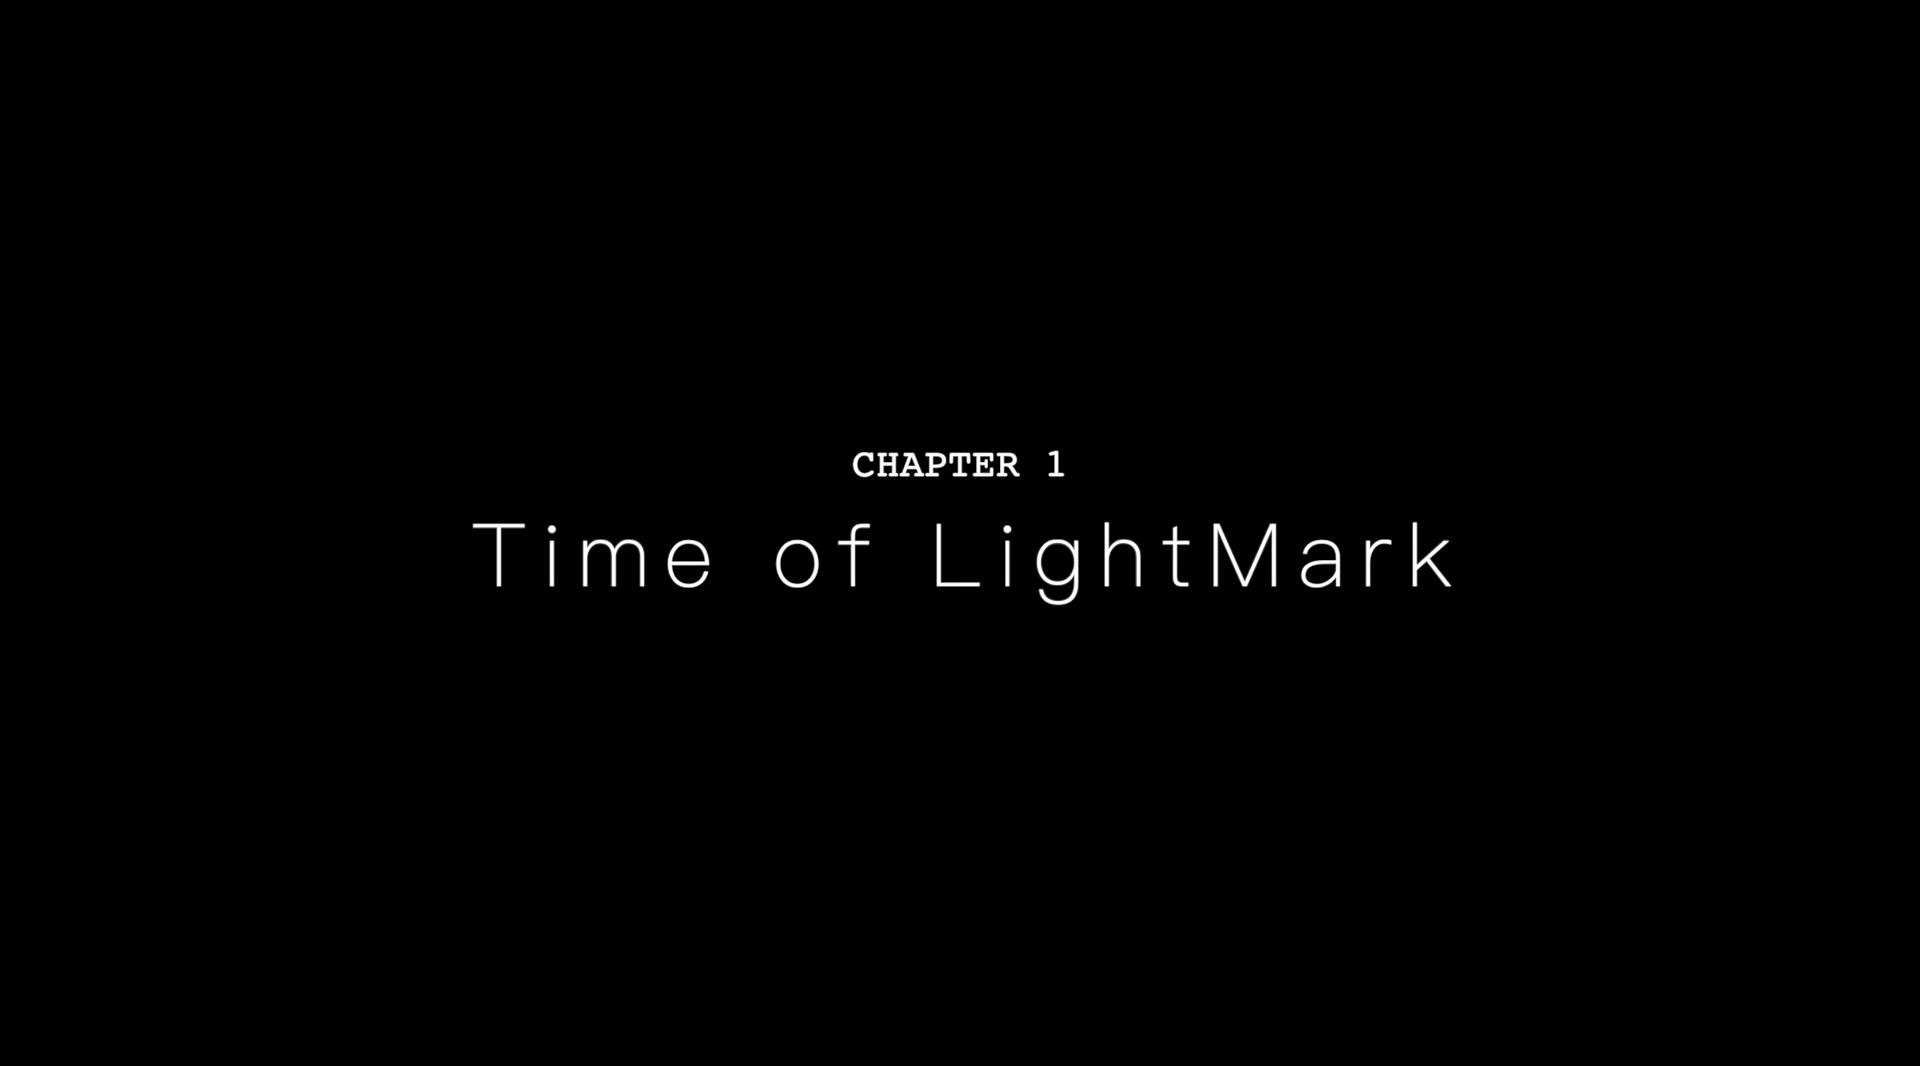 Time of lightmark